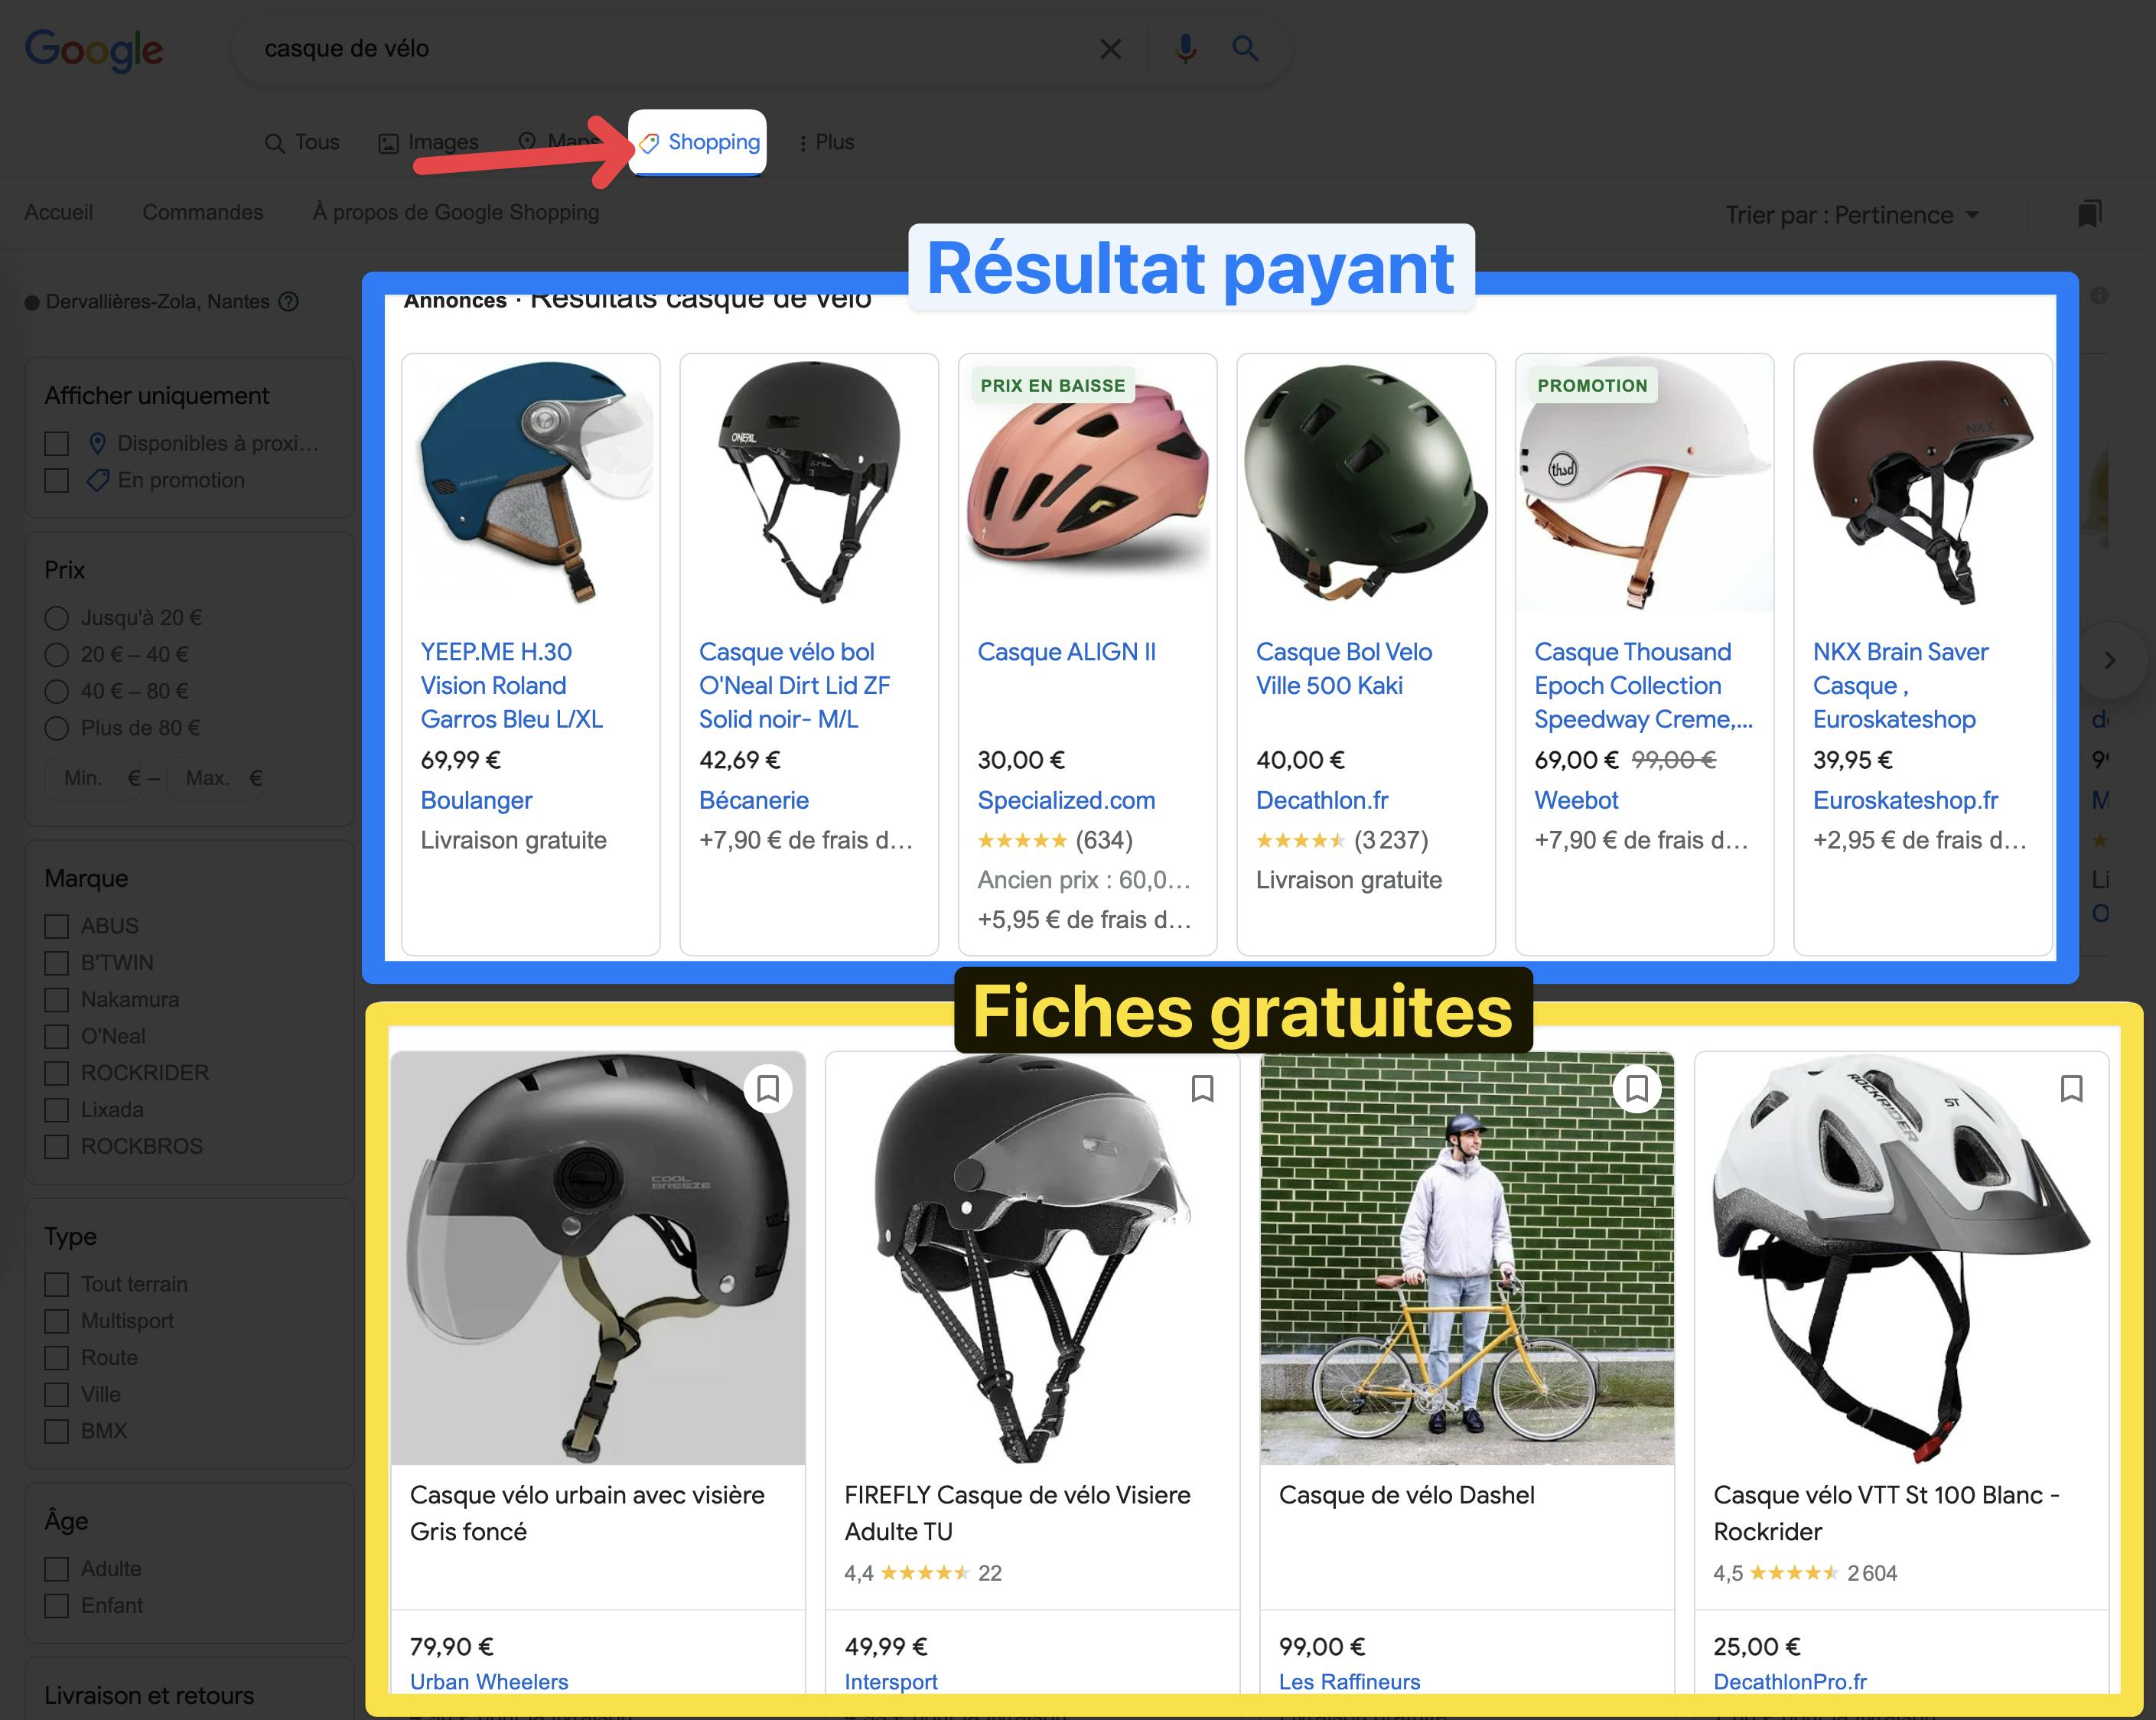 Exemple des résultats payant Google Shopping (bleu) et des fiches gratuites (jaune)